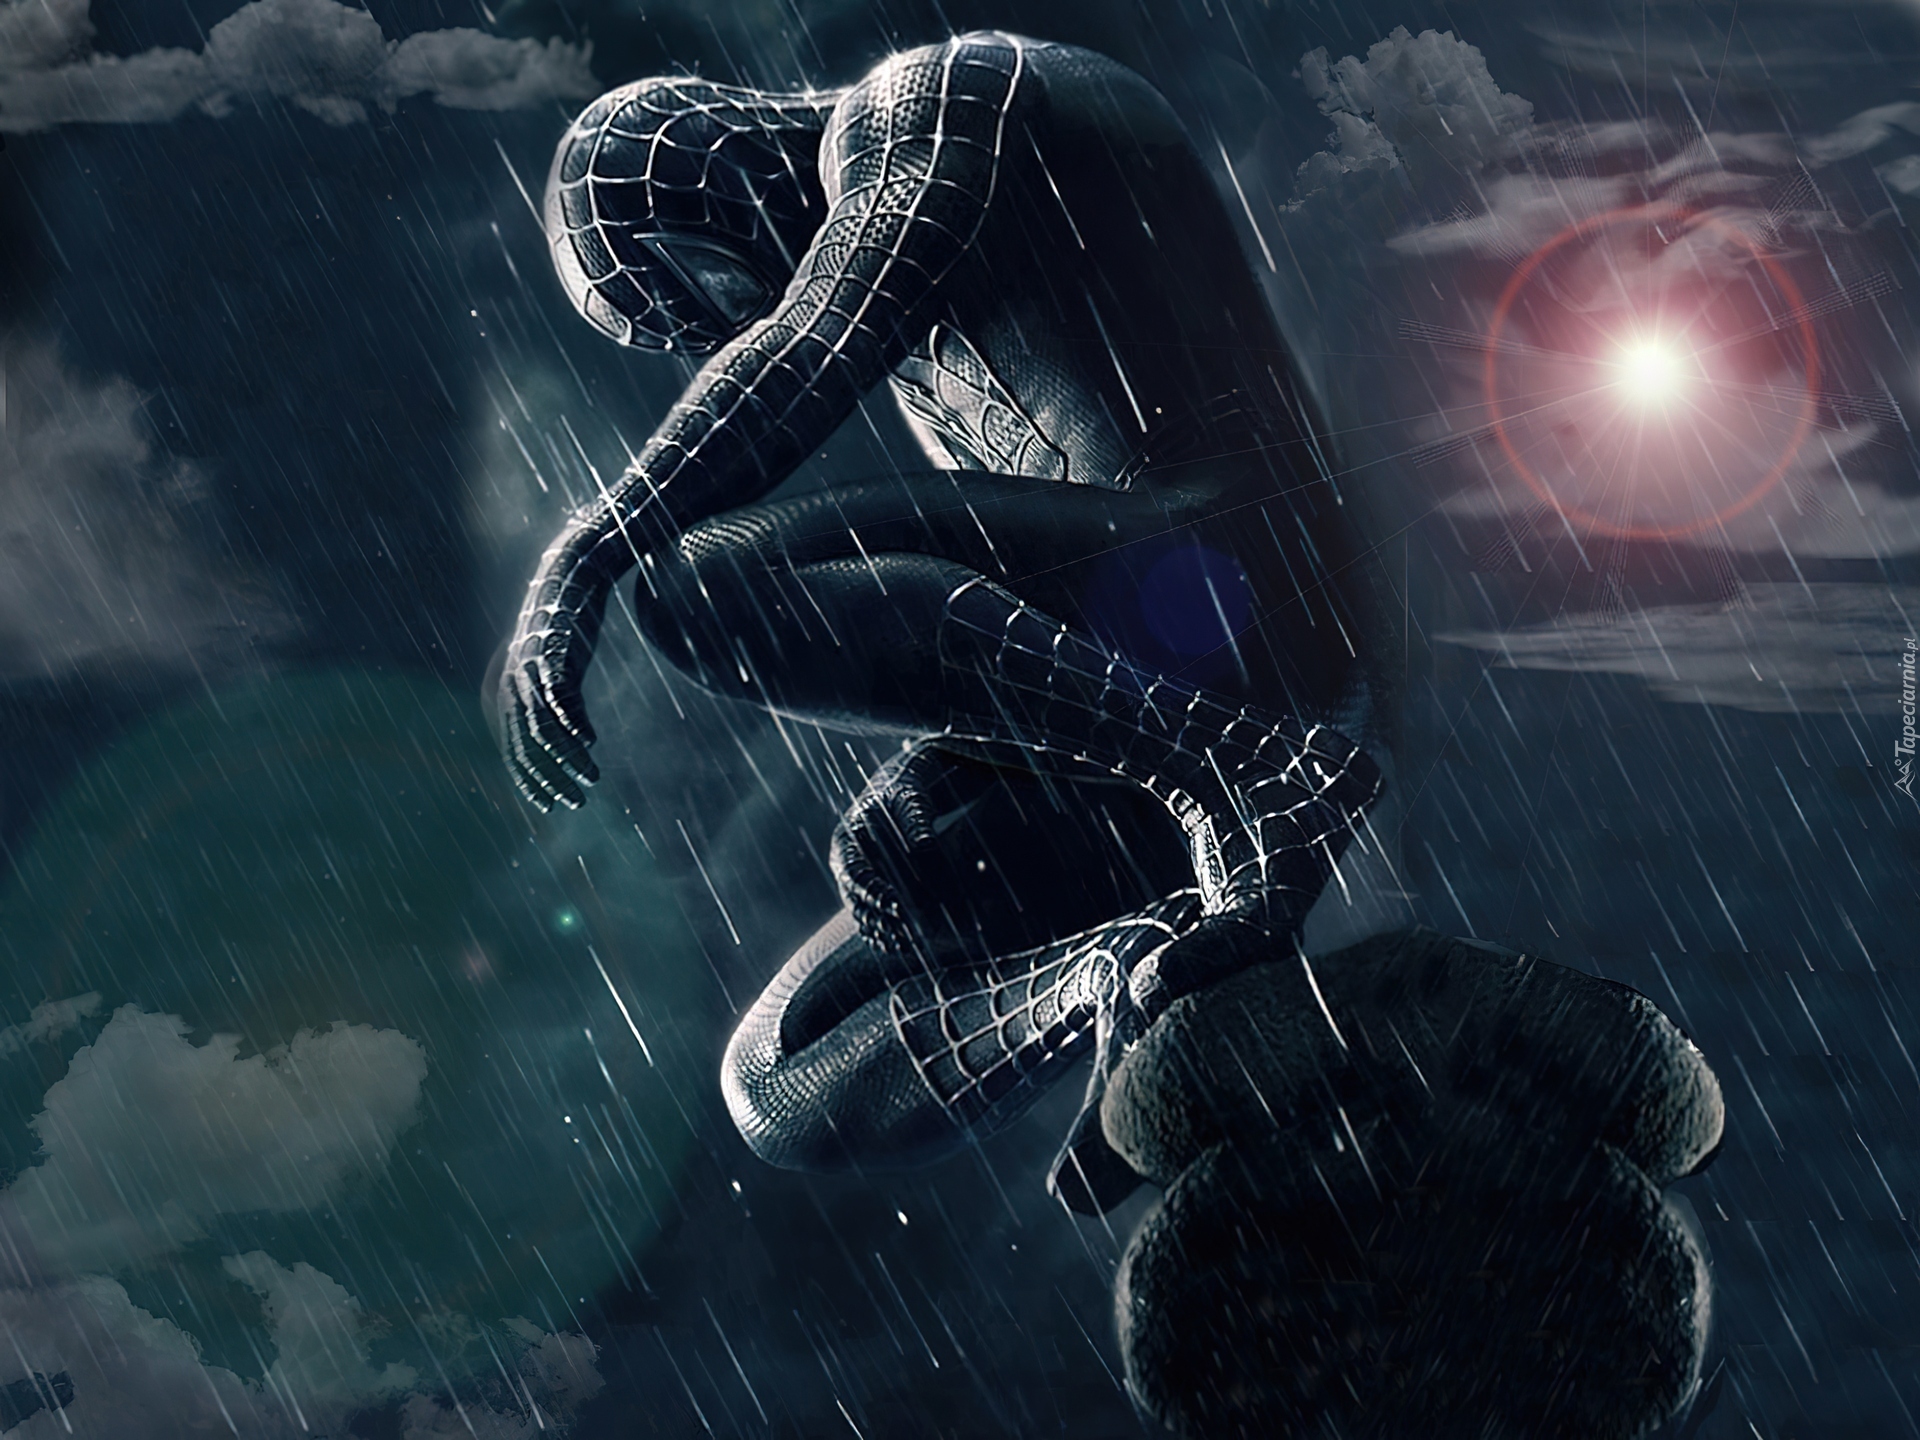 Spider-Man 3, Deszcz